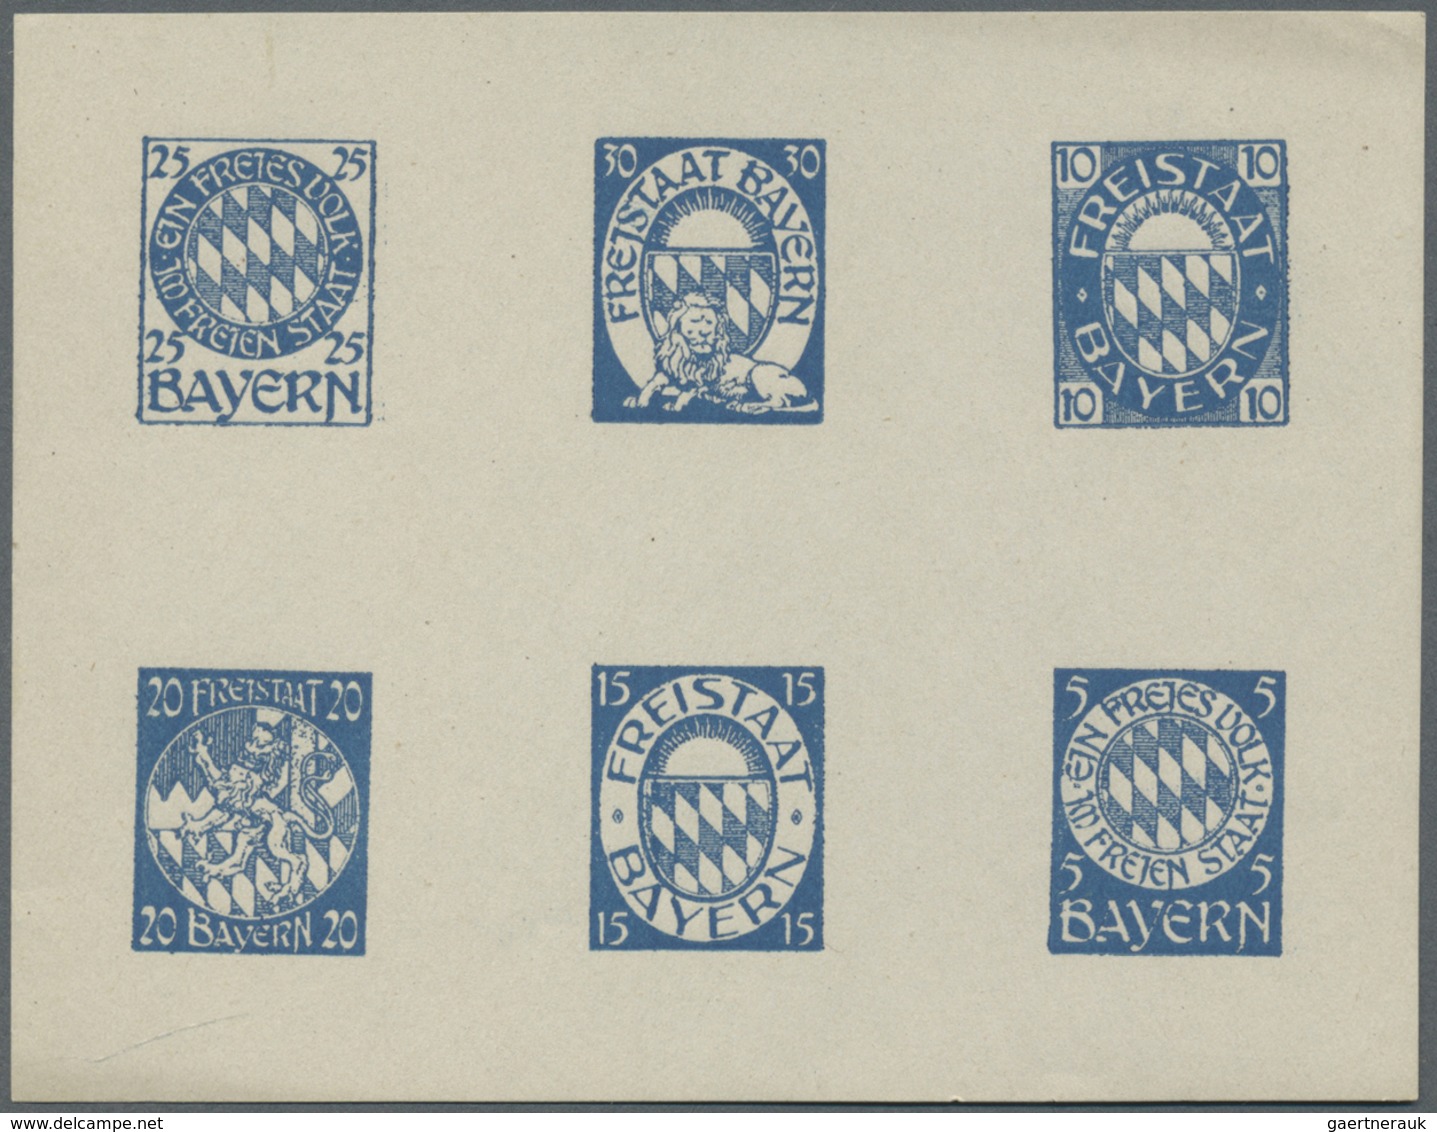 * Bayern - Marken und Briefe: 1919. 1919, Entwürfe des Nürnberger Künstlers Franz Adler für eine neue